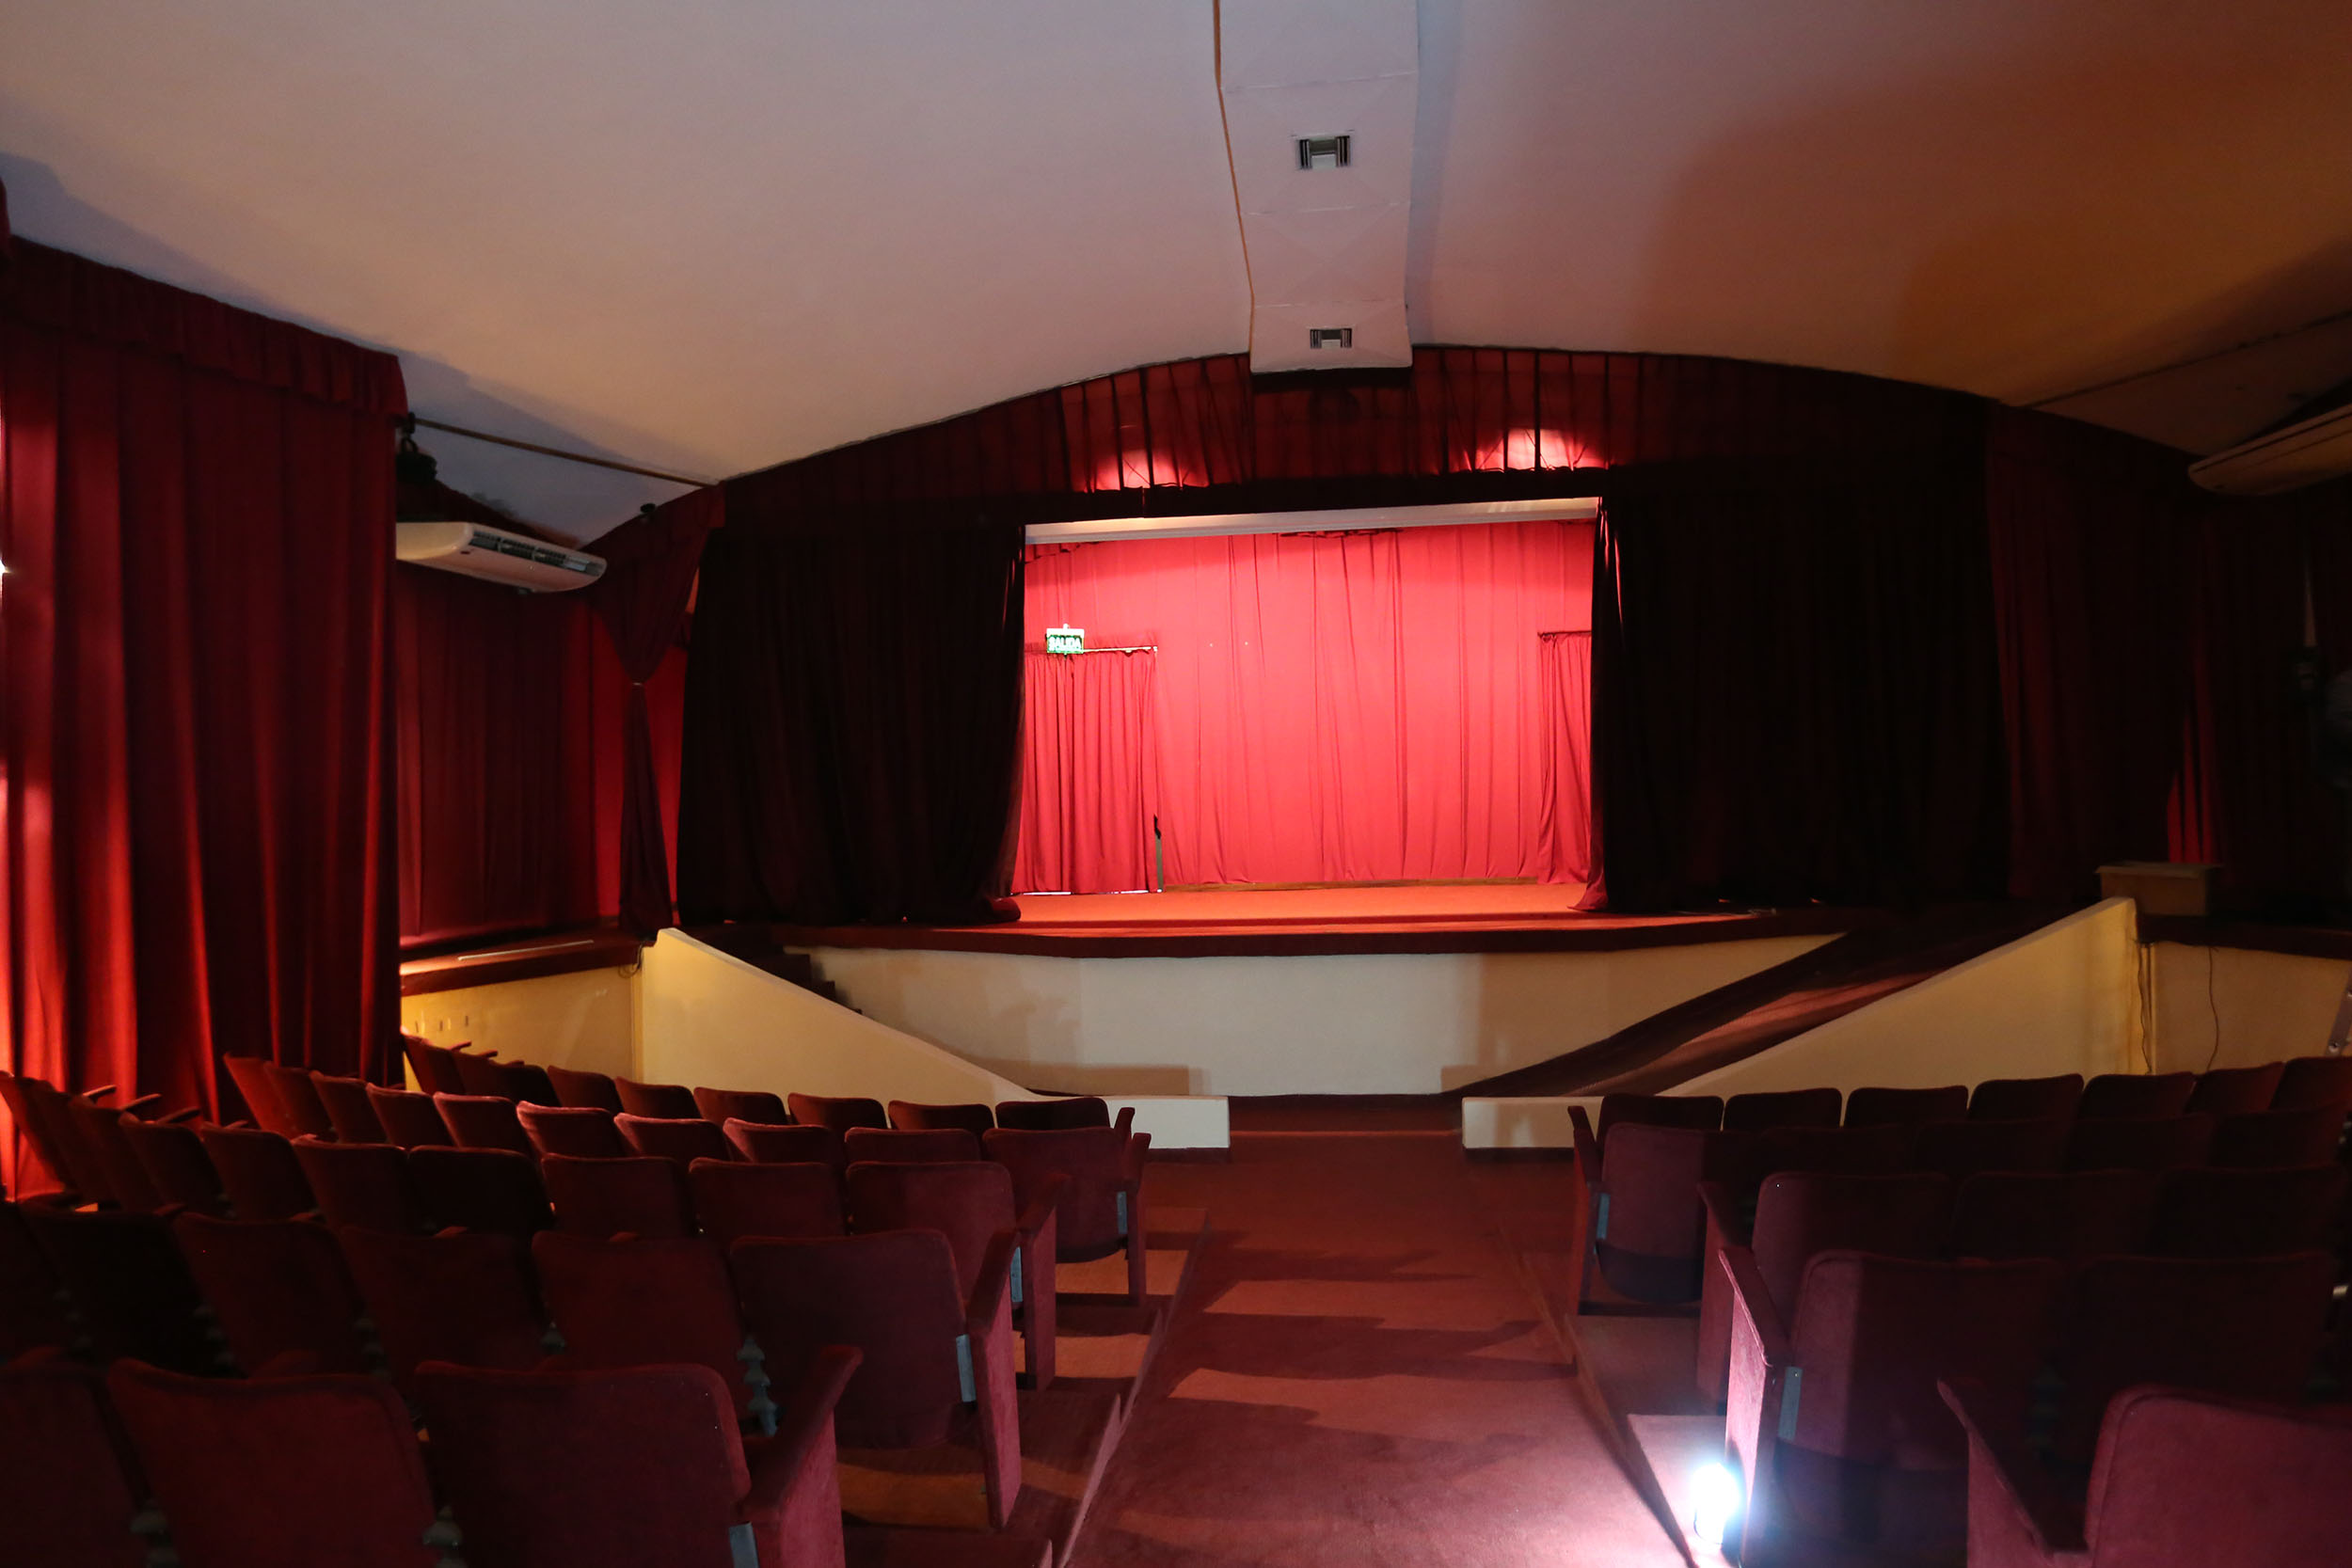 Crecida del río Paraguay obliga al cierre del Cine Teatro del Puerto imagen